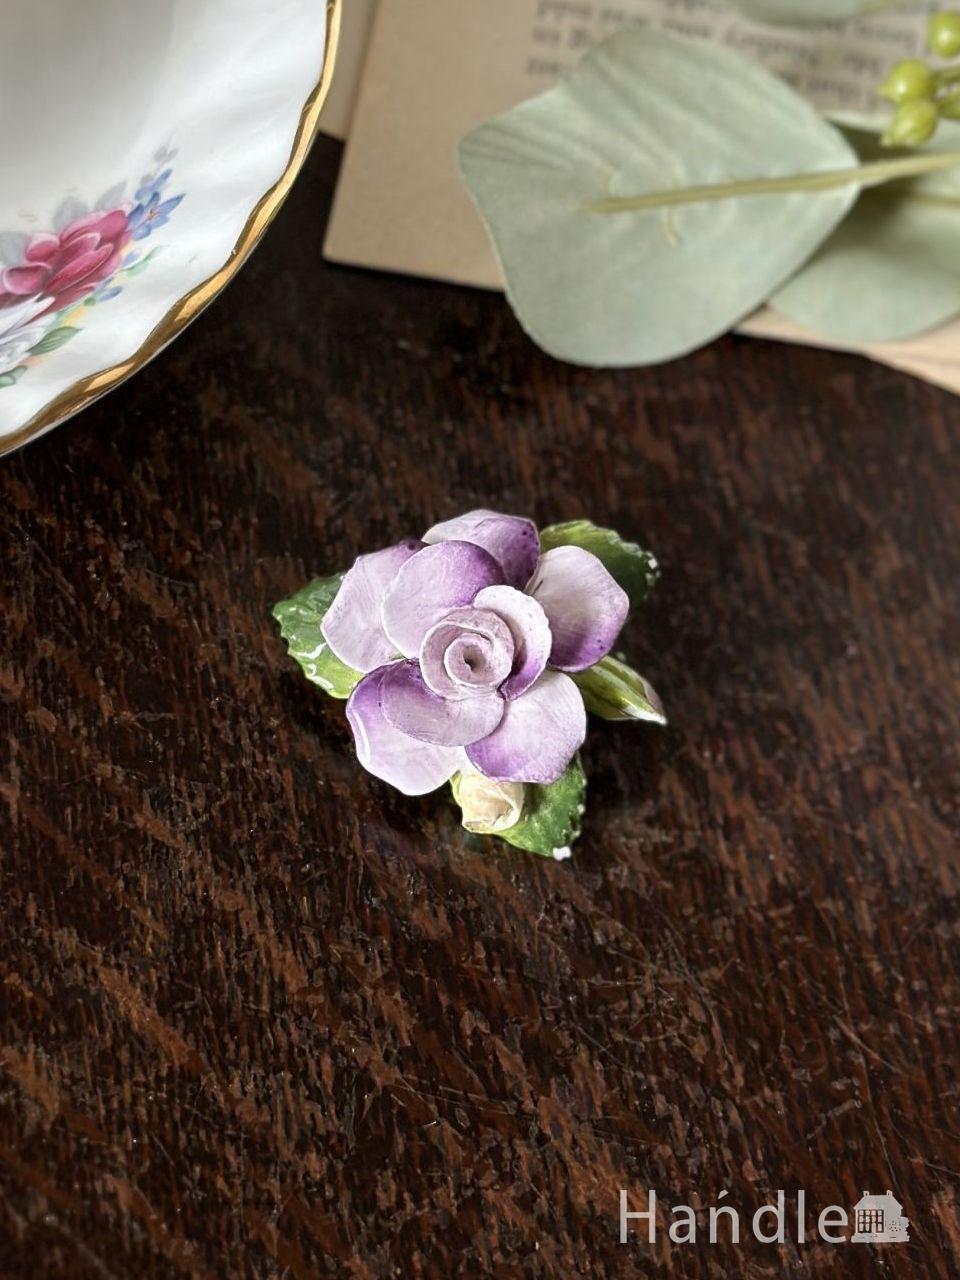 イギリスから届いたアンティークのブローチ、紫色のお花の形が可愛い